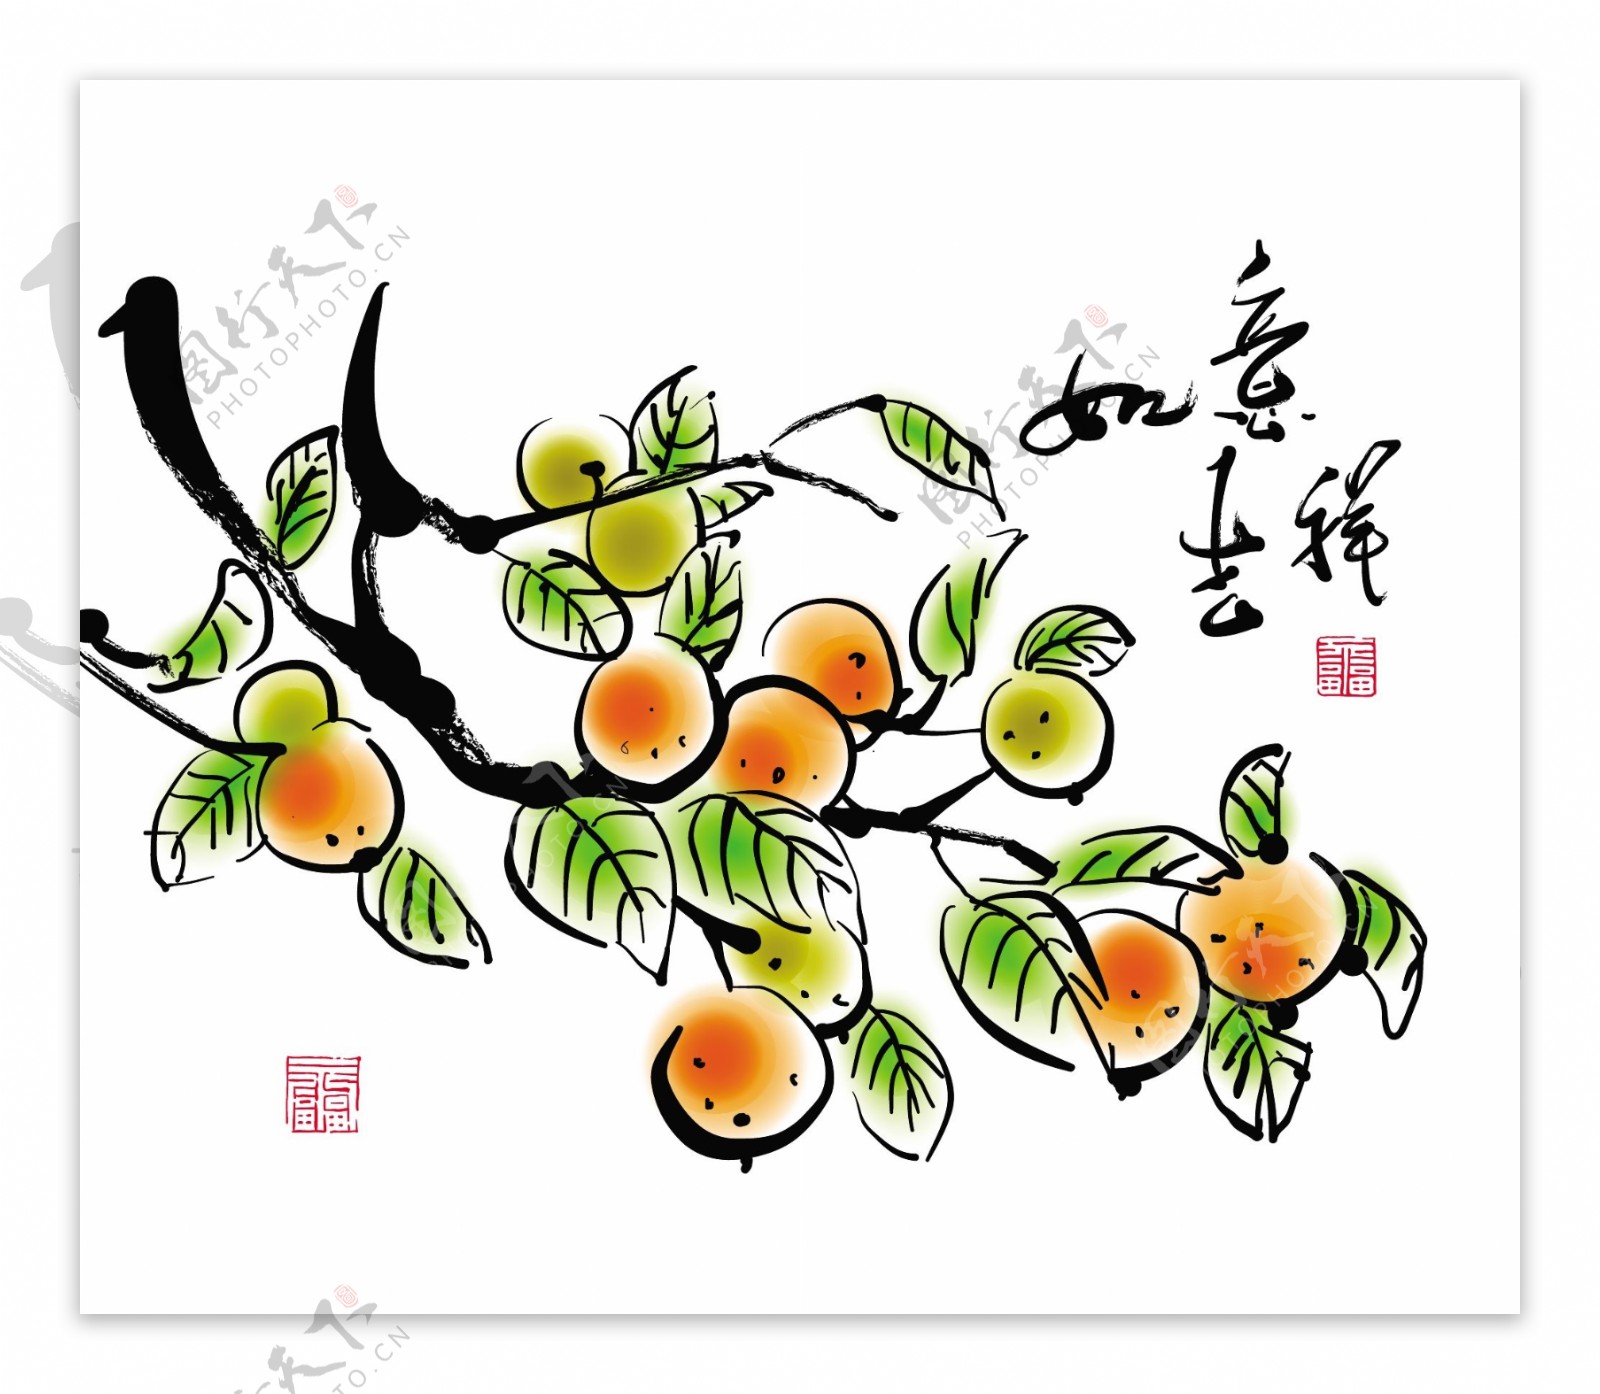 中国的新年画向量的中文文本翻译如意吉祥的橘子